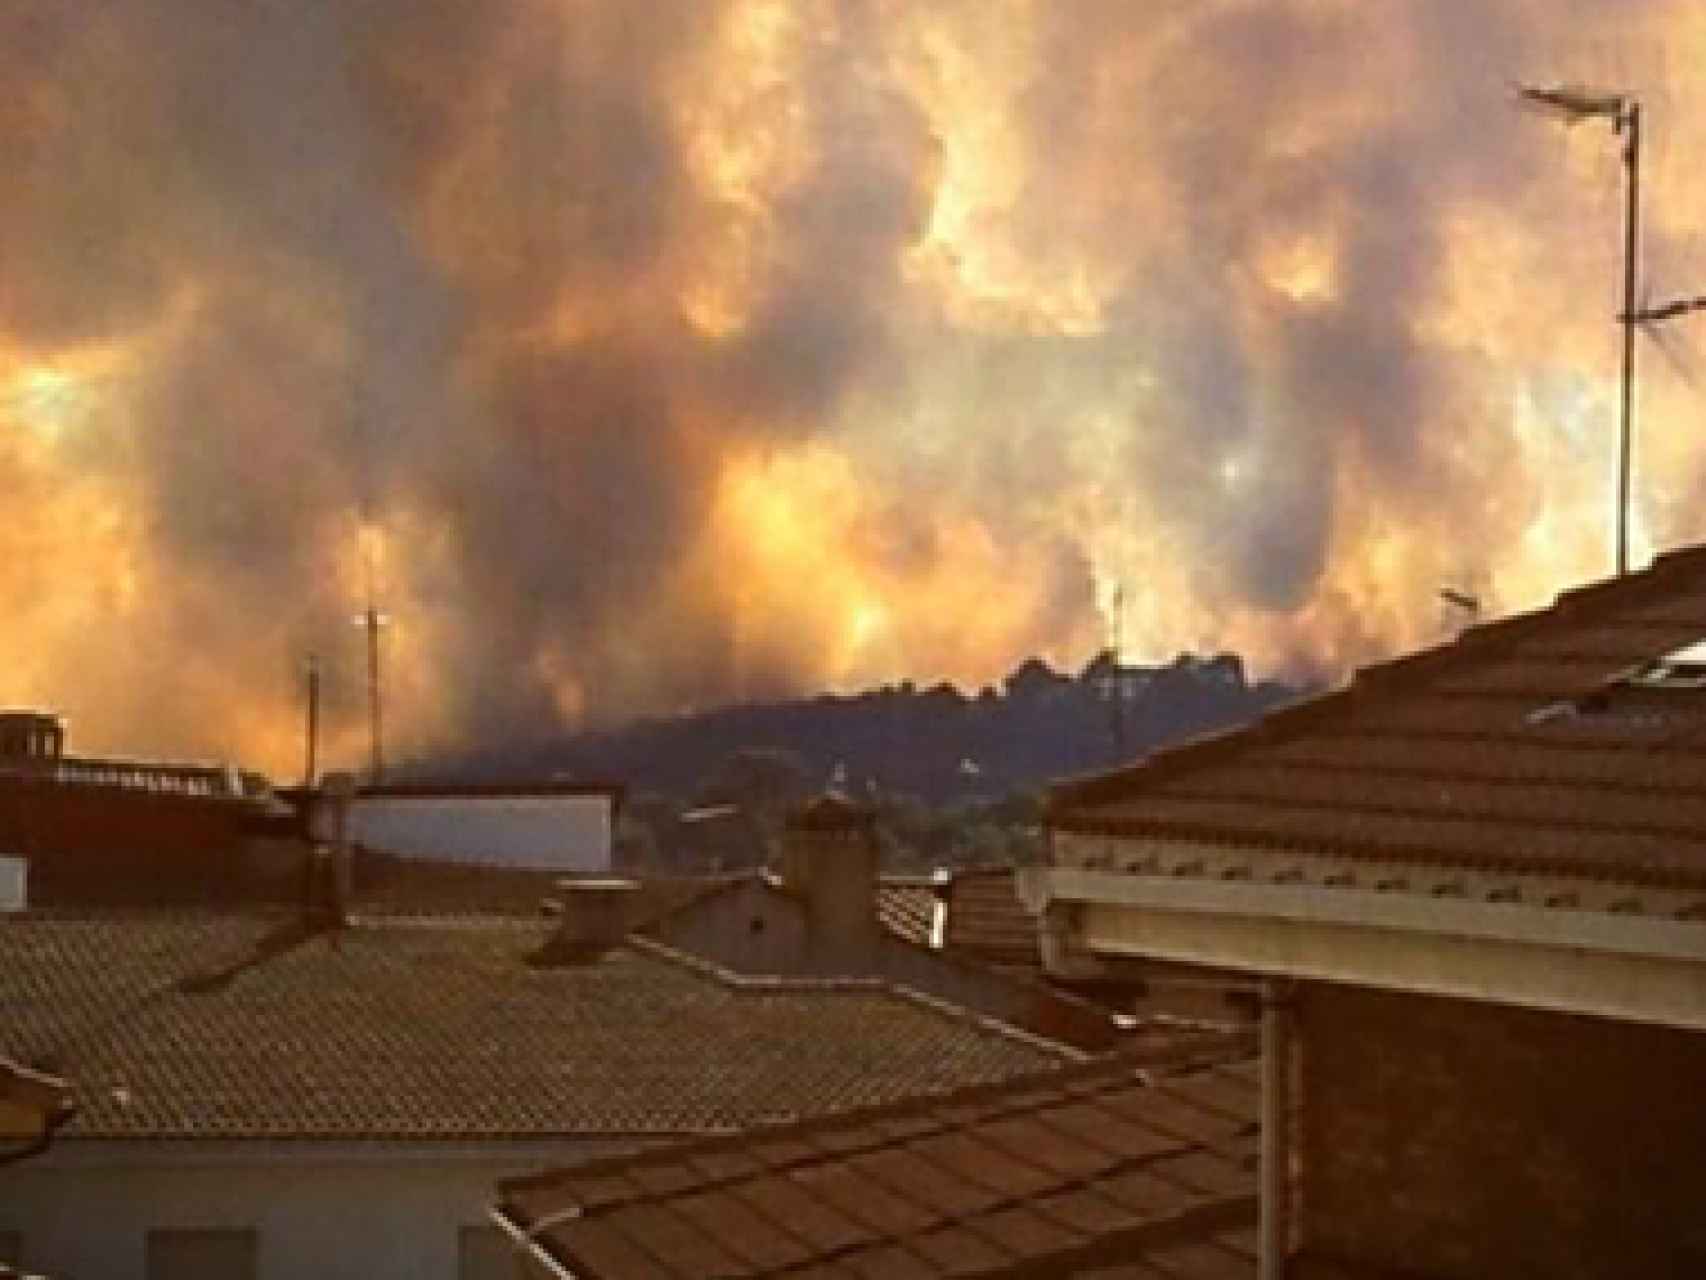 Imagen captada por un vecino de Navas durante uno de los incendios provocados por el guardia civil.